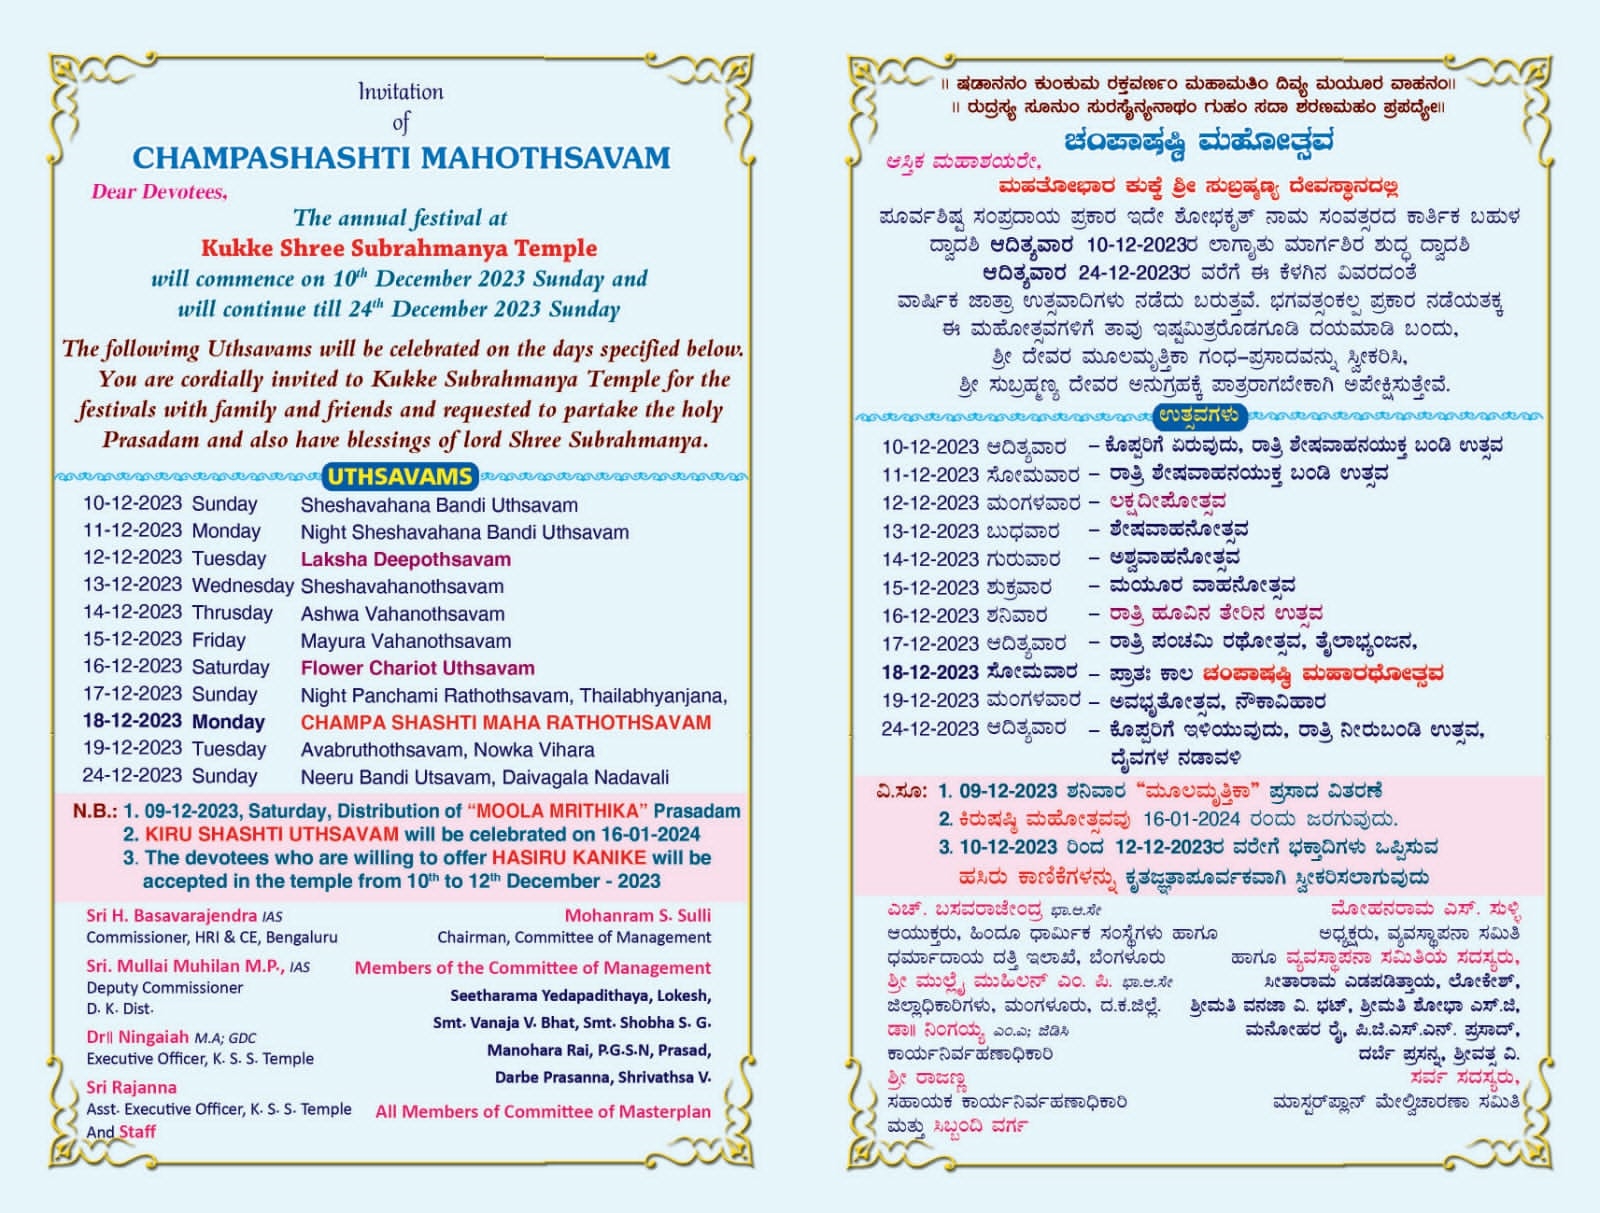 Invitation letter for Champashashti Mahotsava